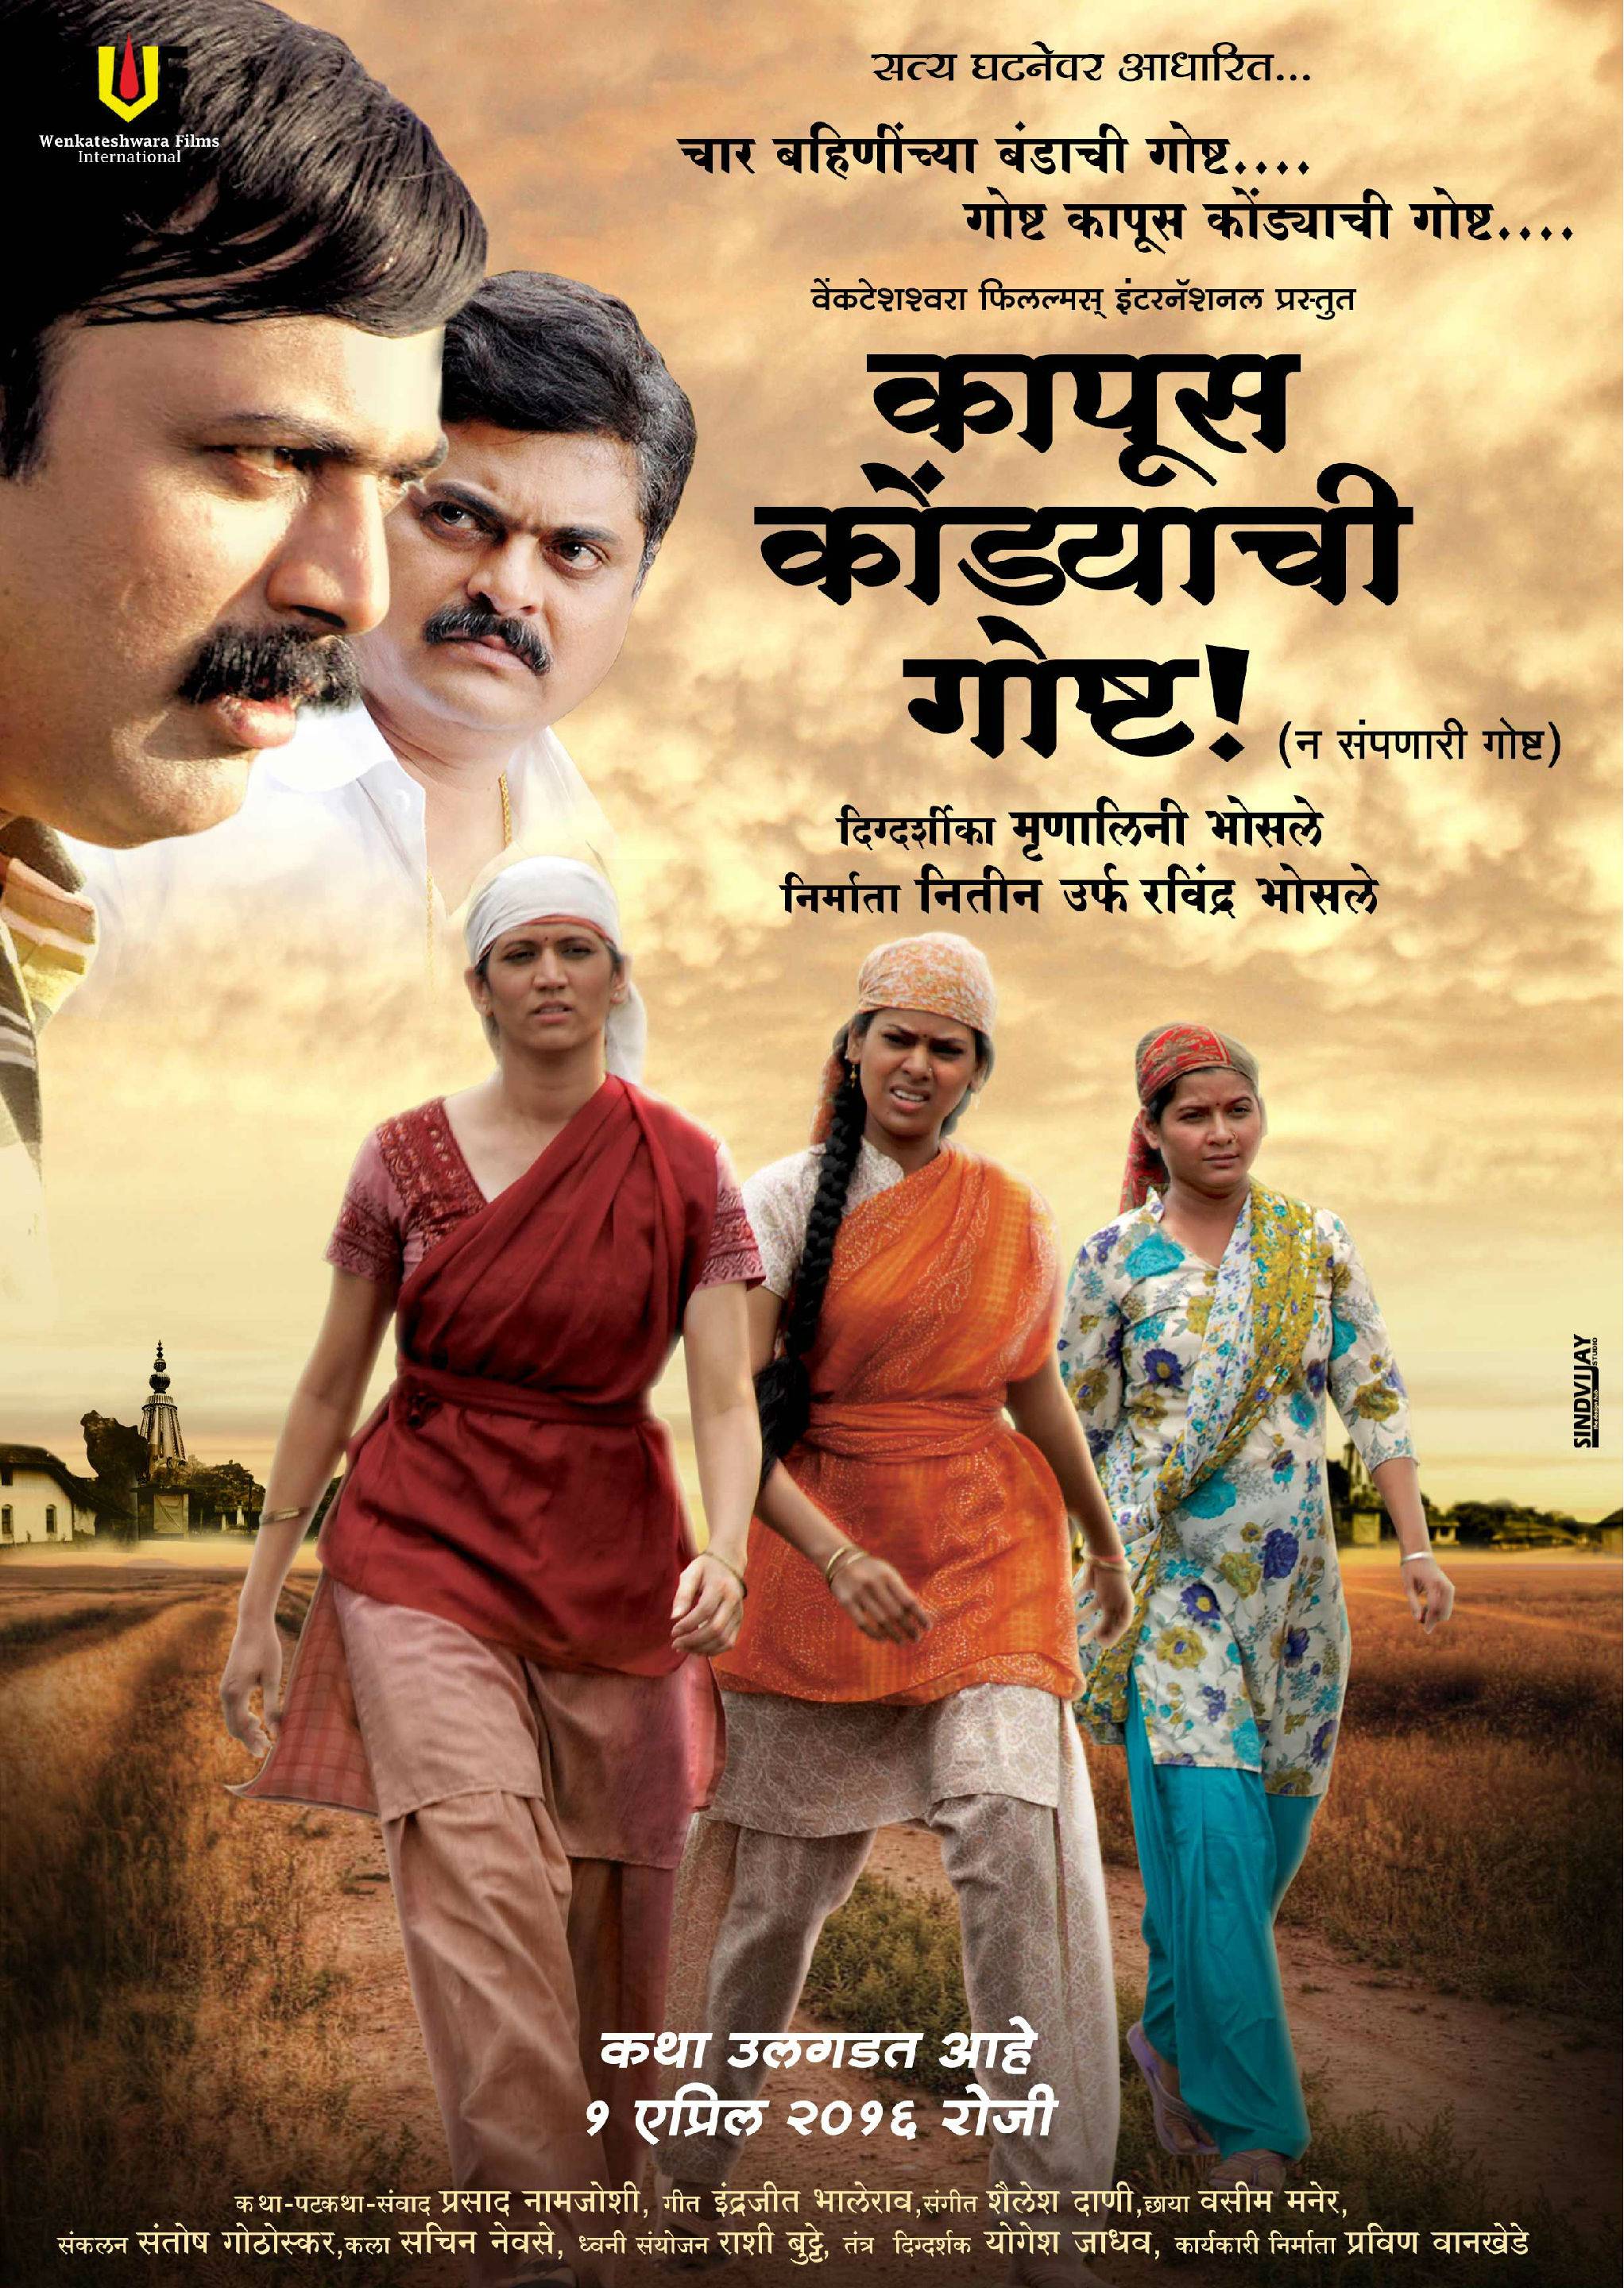 rege marathi movie download kickass